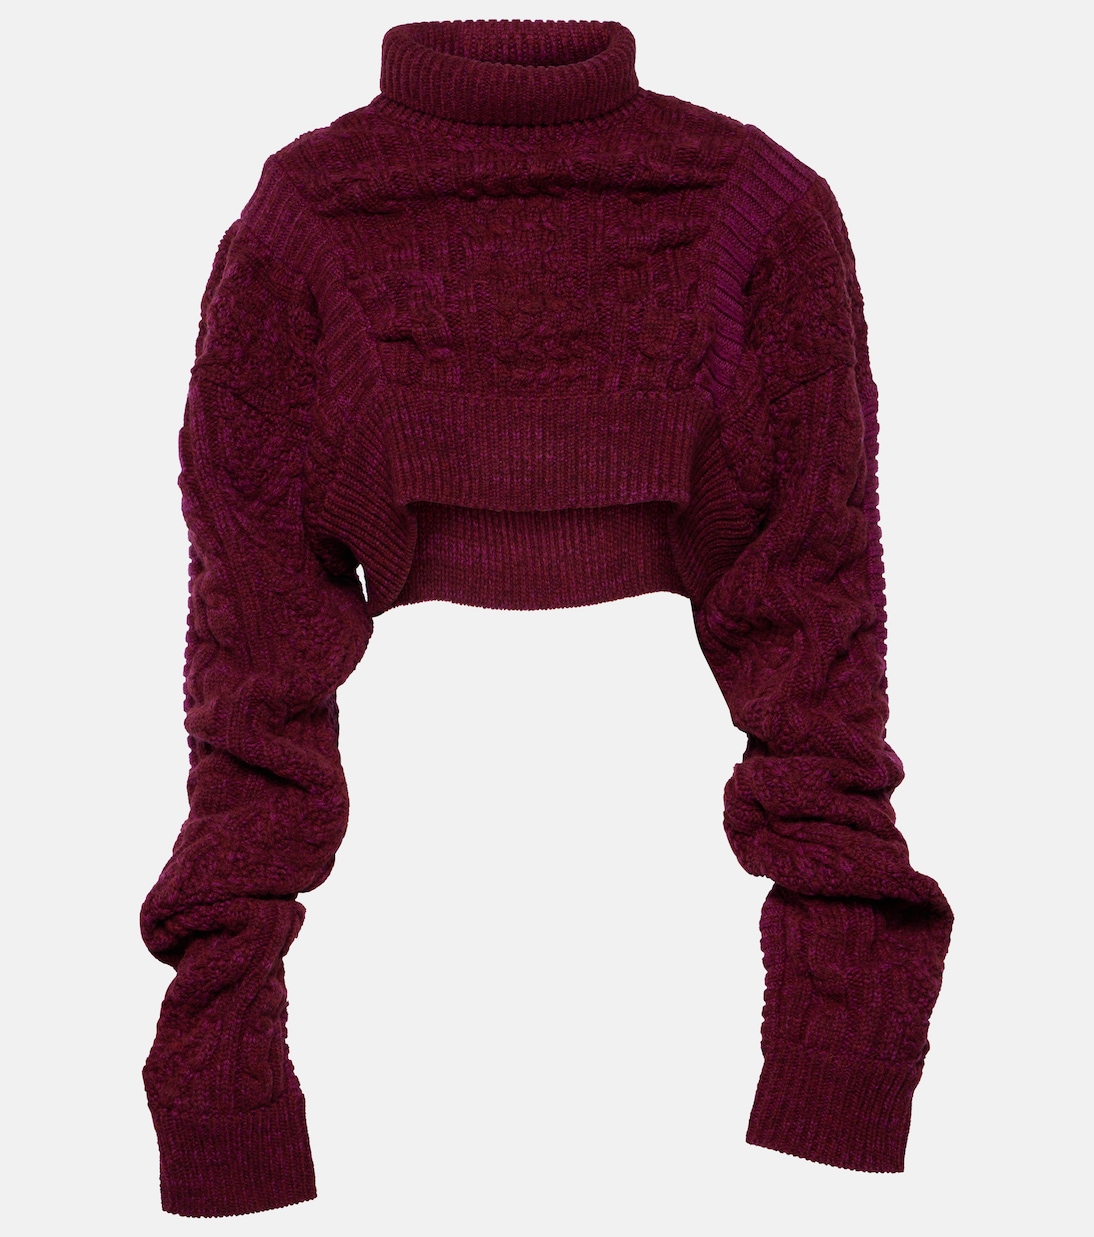 Шерстяной свитер косой вязки Noir Kei Ninomiya, фиолетовый шерстяной свитер косой вязки